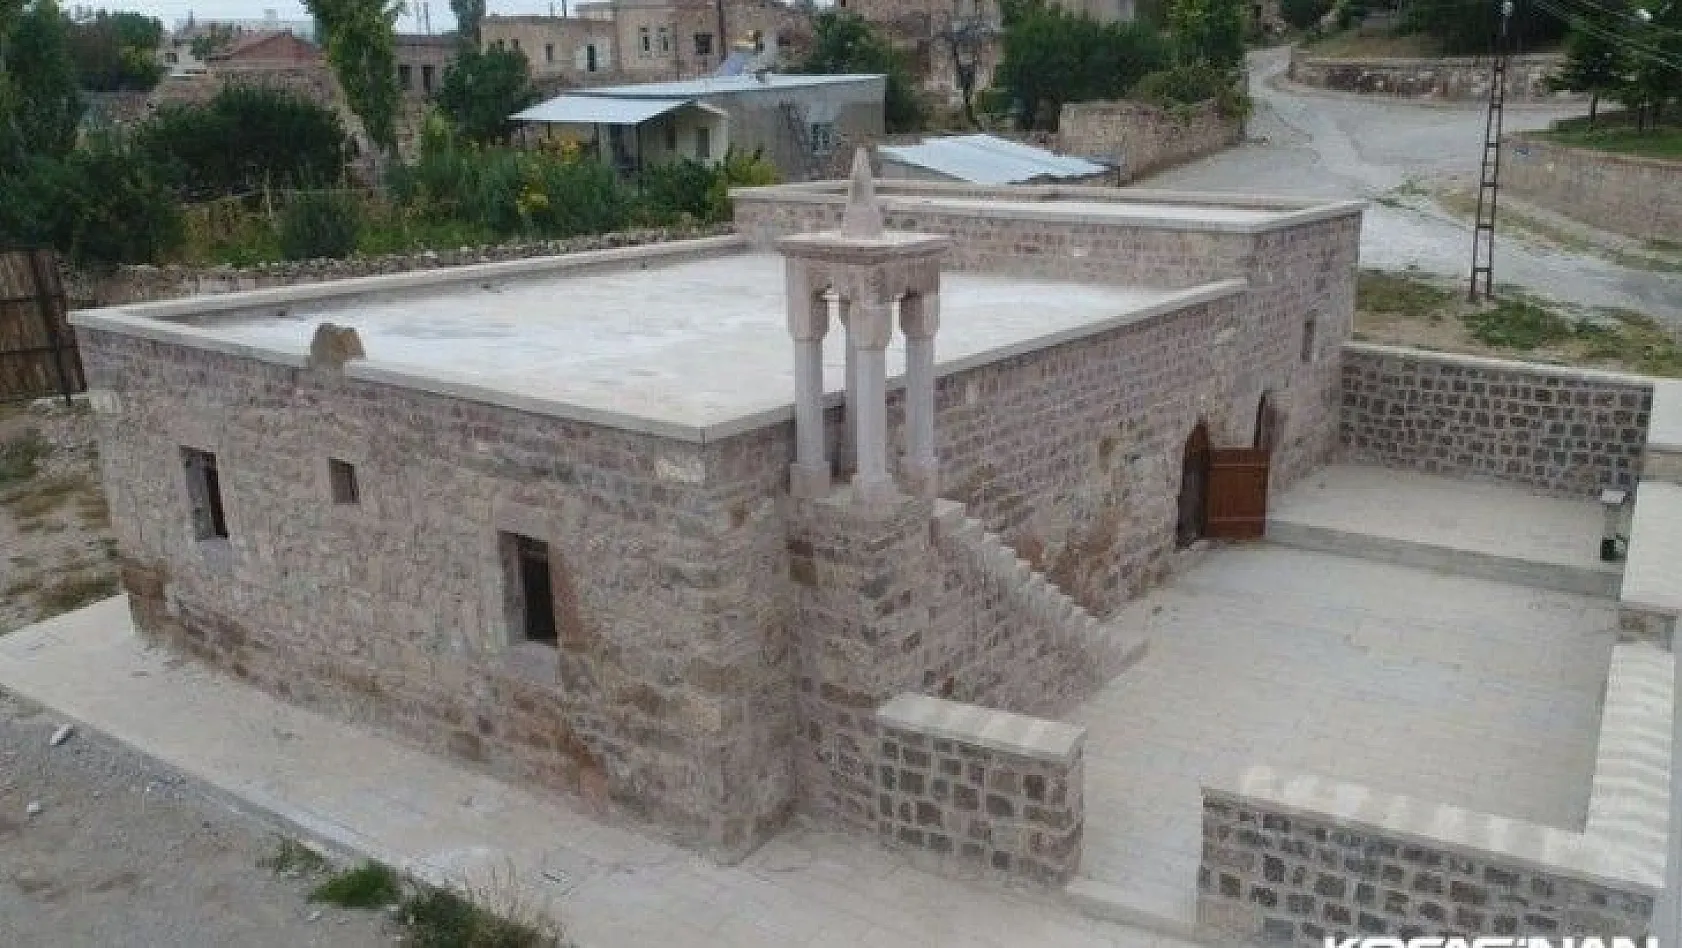 Kocasinan Belediyesi 8 asırlık camiyi restore etti